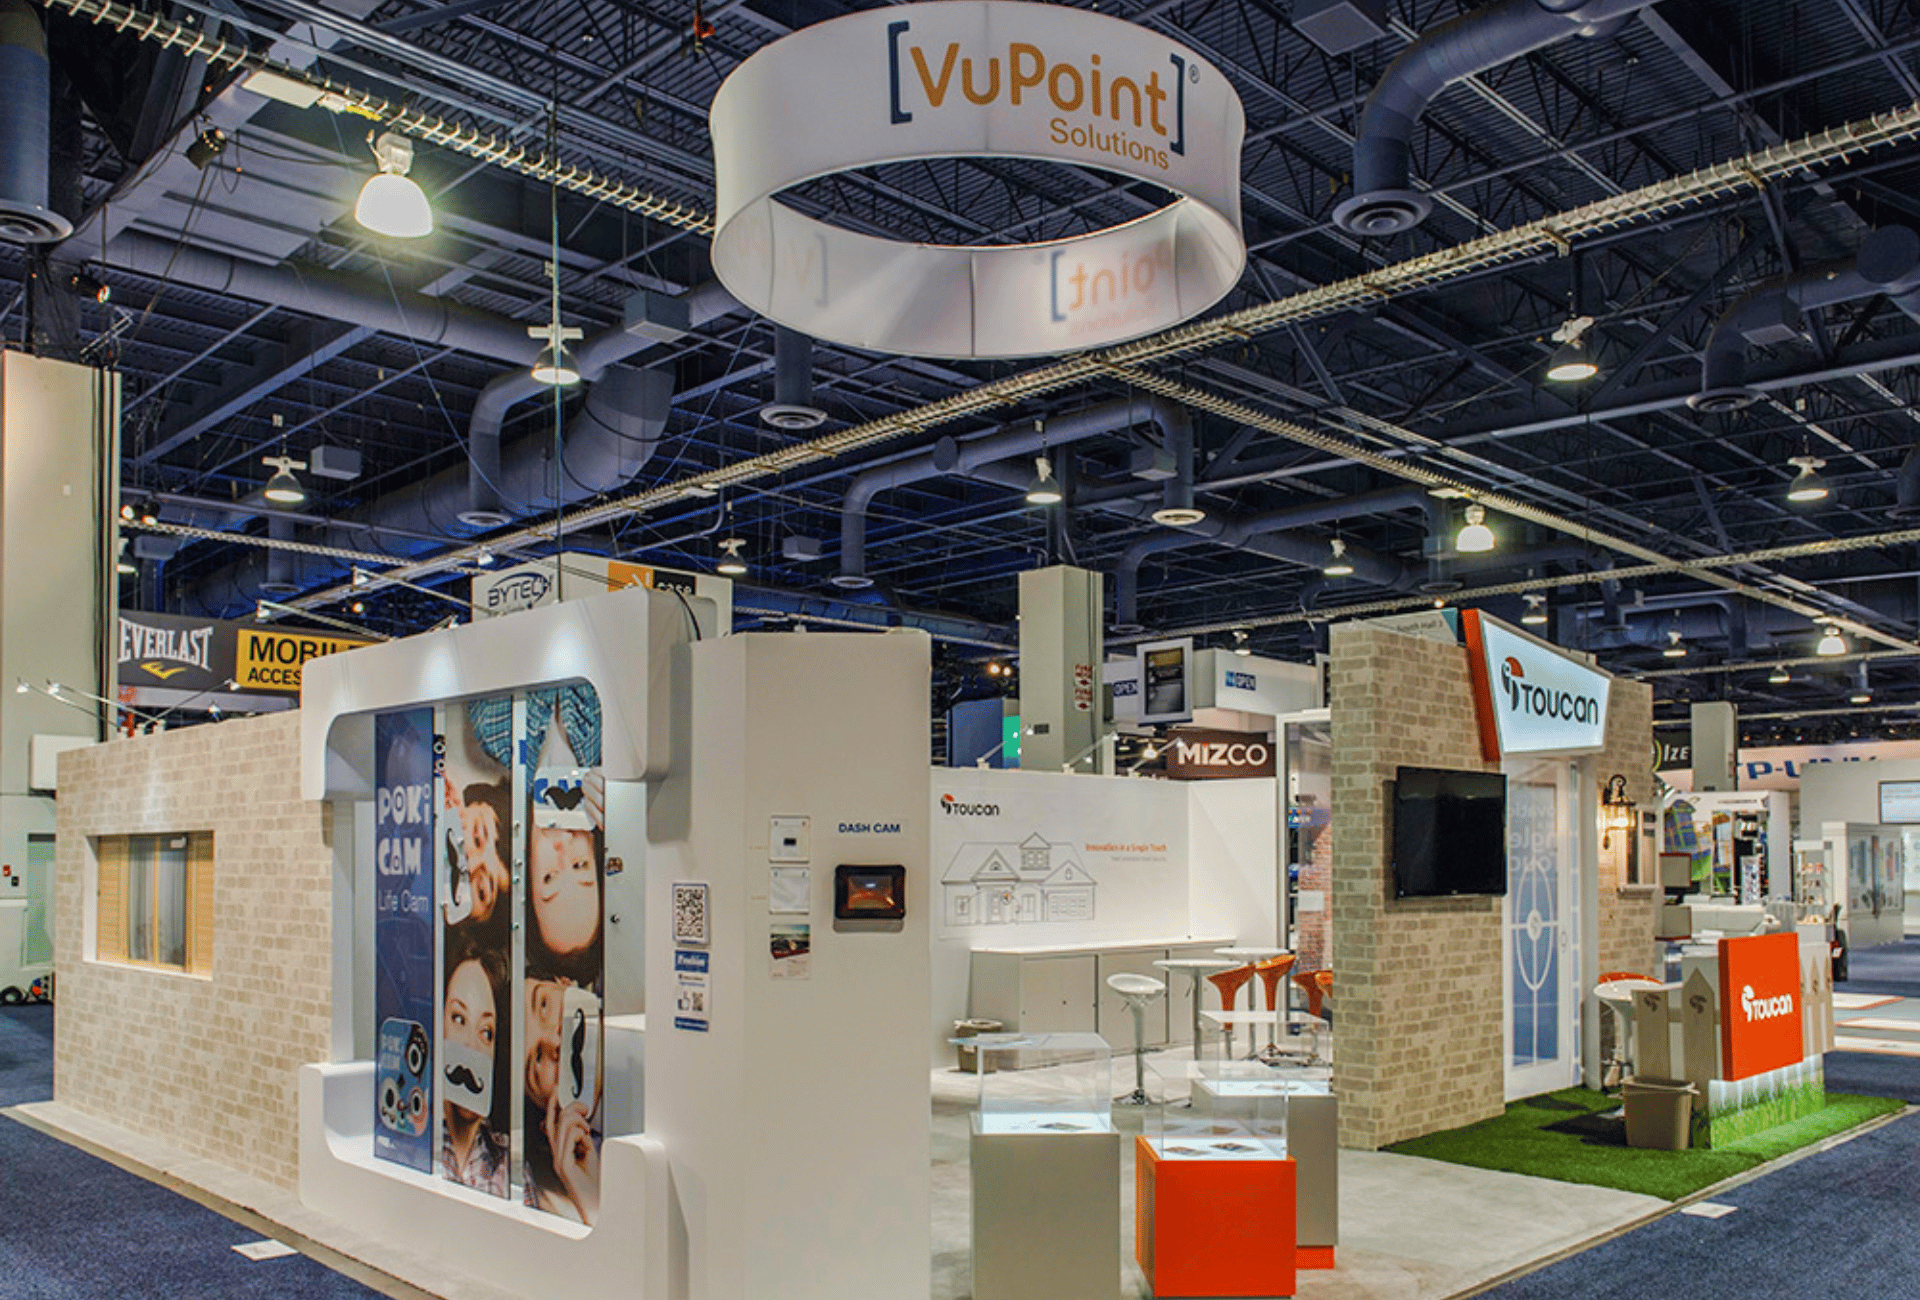 CES 2016 – Las Vegas Convention Center